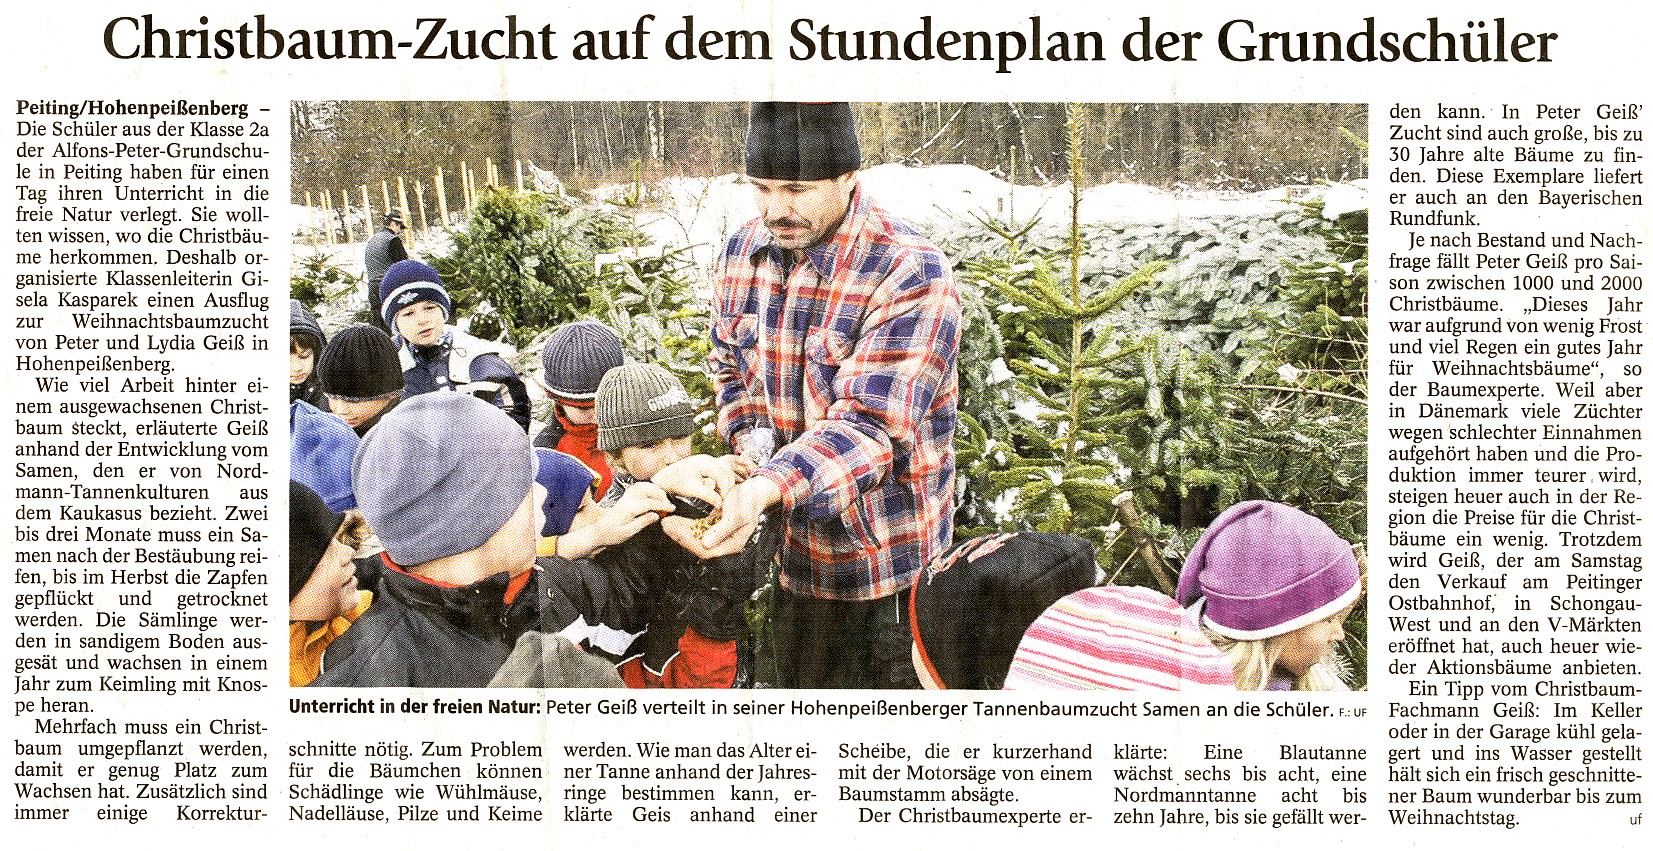 Tannen Geiß - Schongauer Nachrichten - November 2007